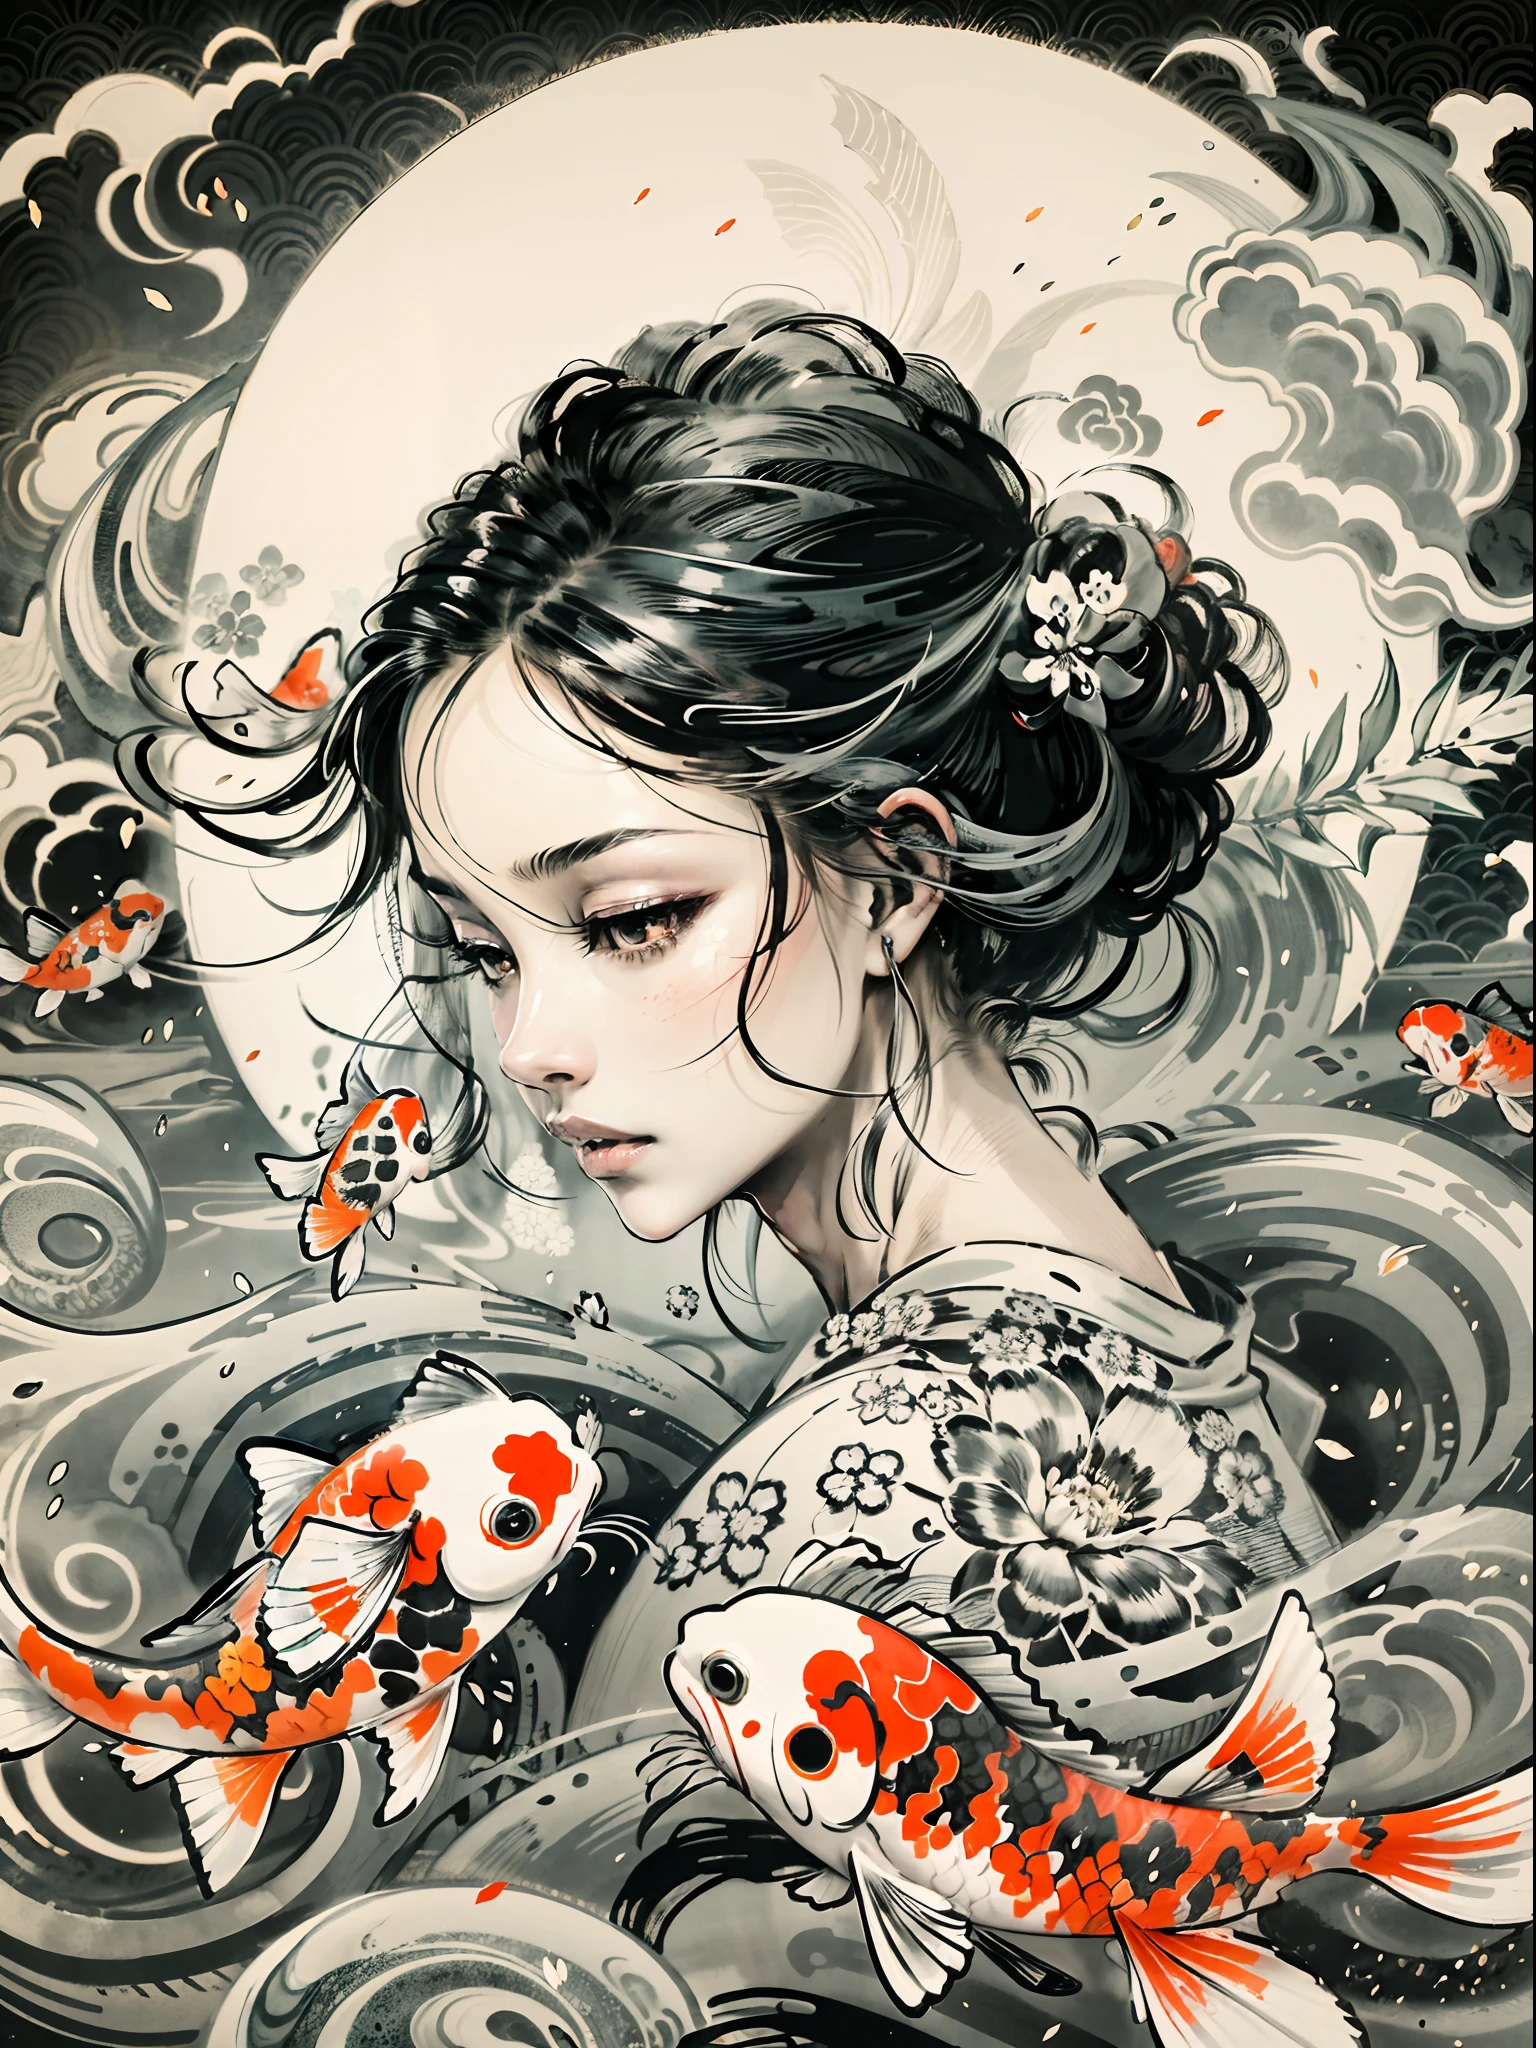 "Eine faszinierende Darstellung eleganter Koi-Fische, die anmutig um ein junges Mädchen wirbeln, erinnert an eine atemberaubende japanische Schwarz-Weiß-Tuschemalerei, bildet ein faszinierendes Yin-Yang-Symbol im Hintergrund."